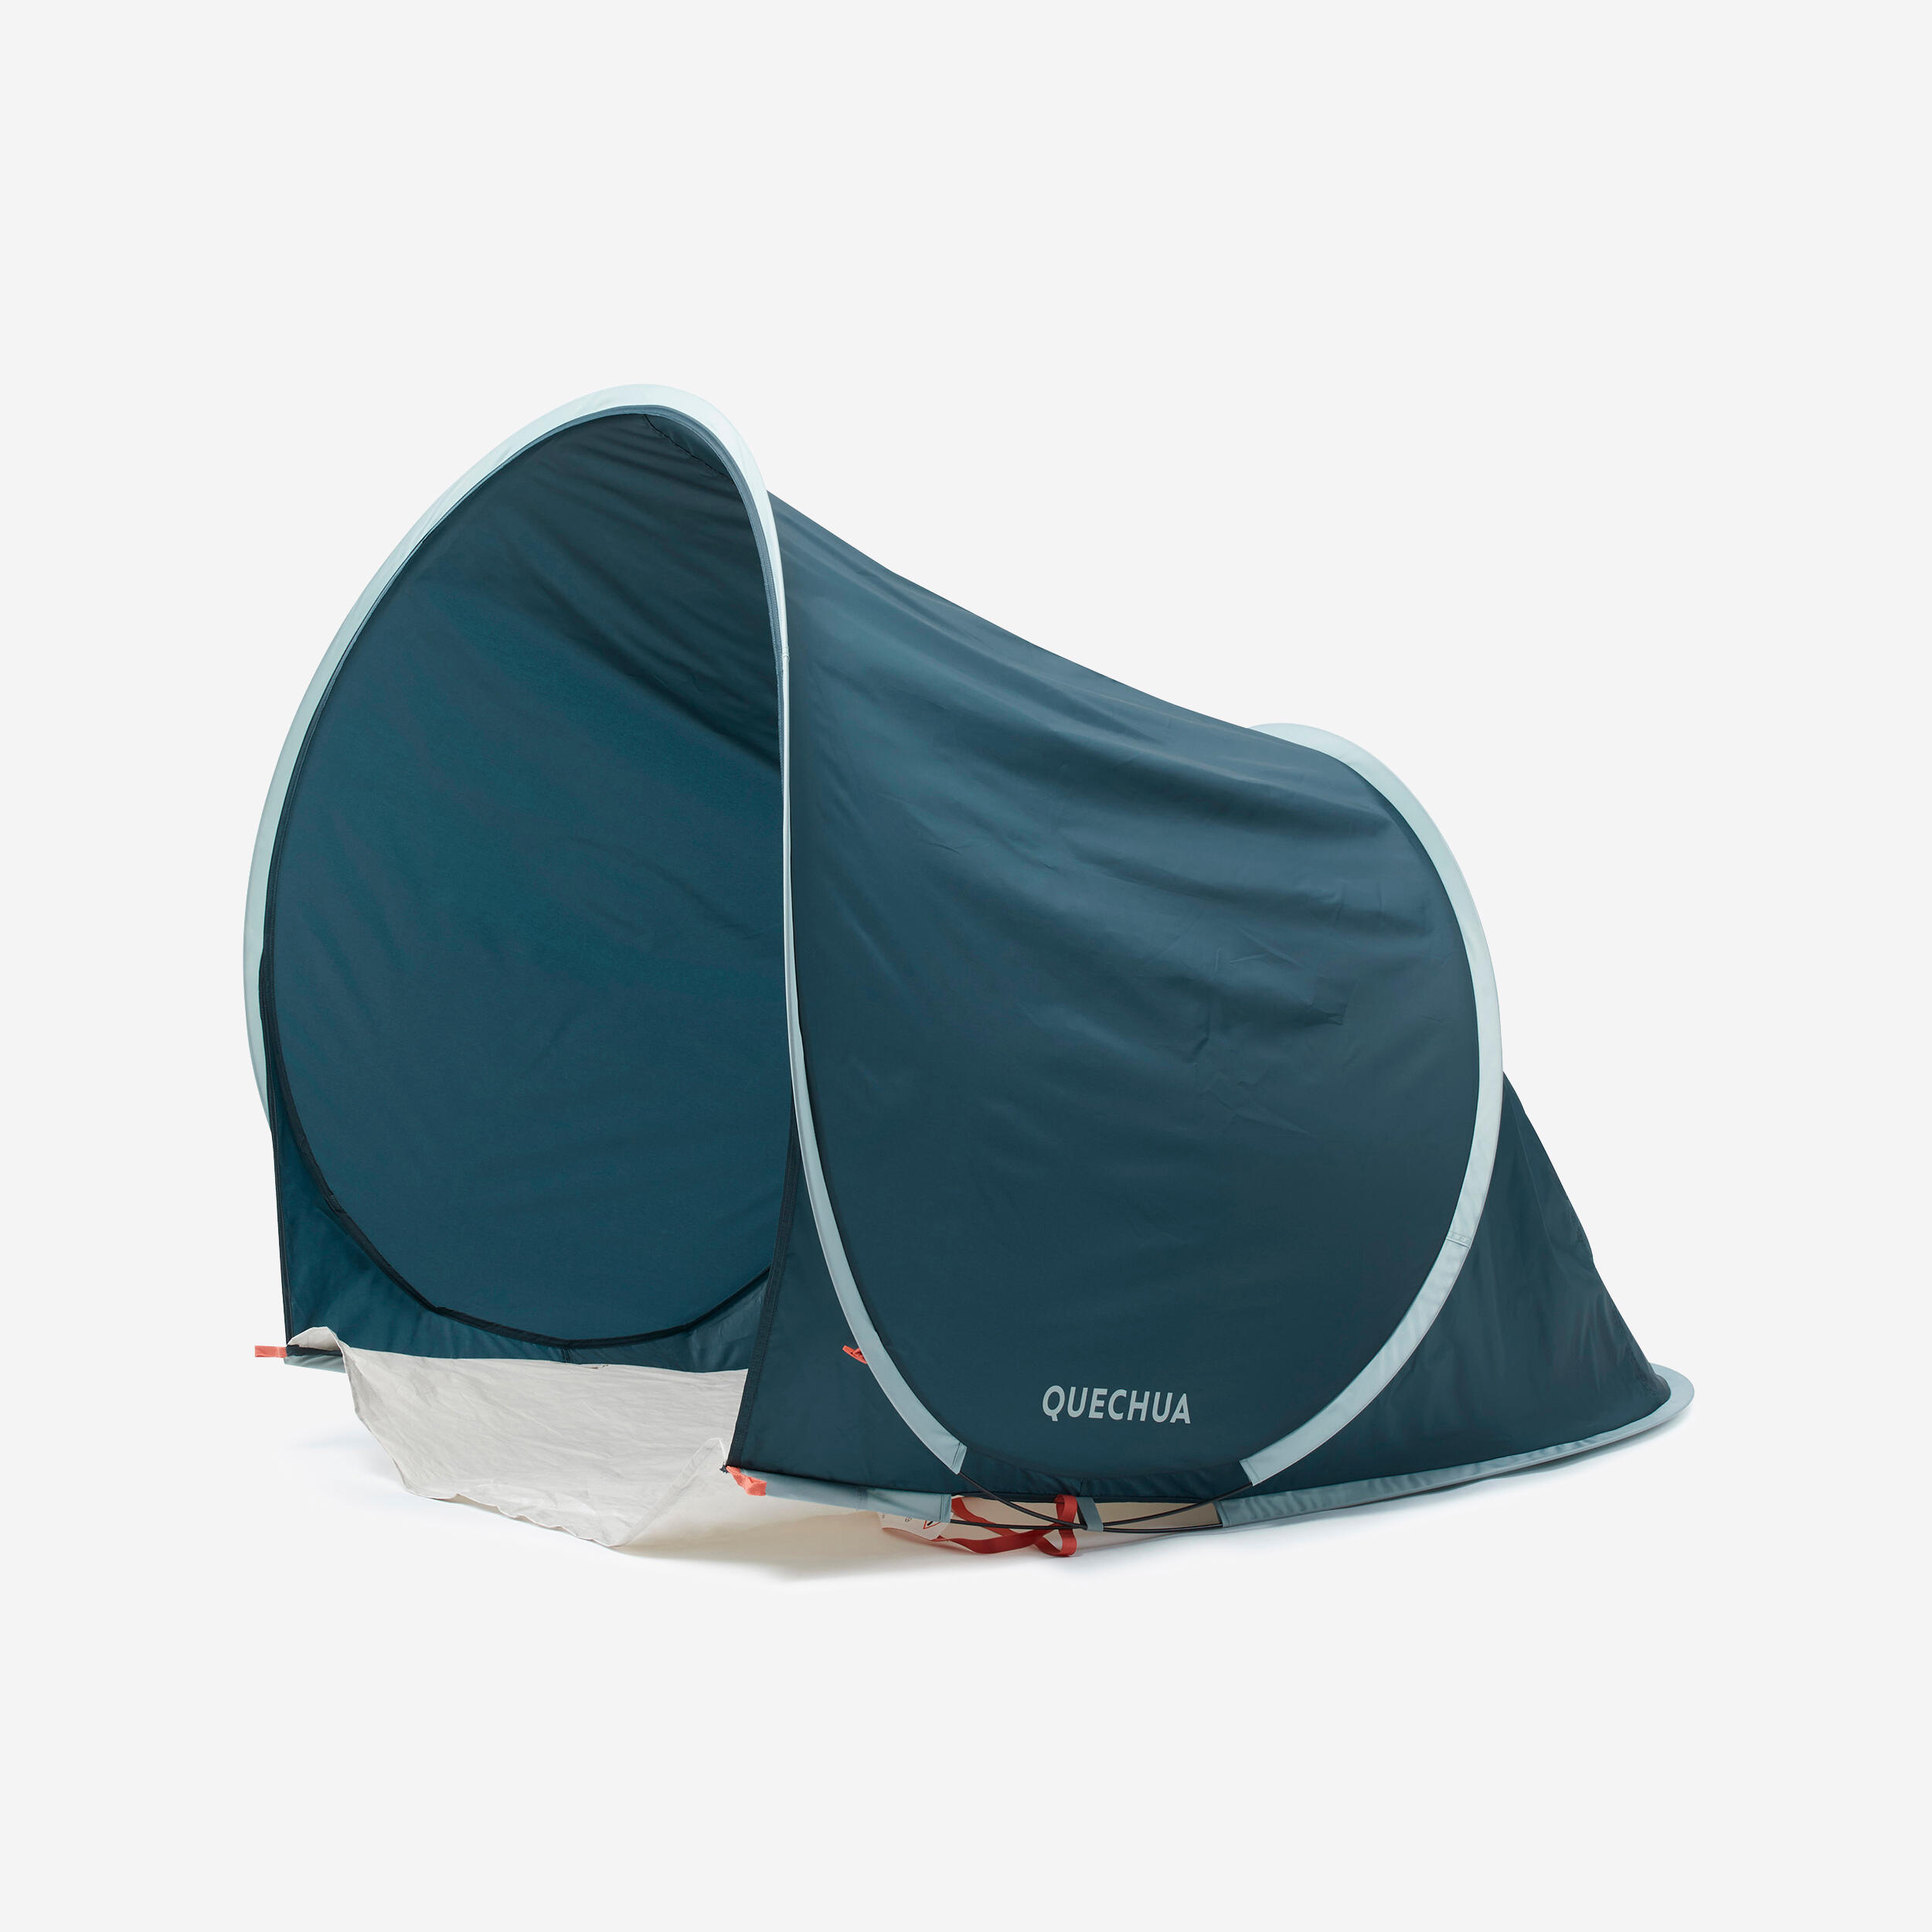 Msr Carbon Reflex 1 Tent Green V4